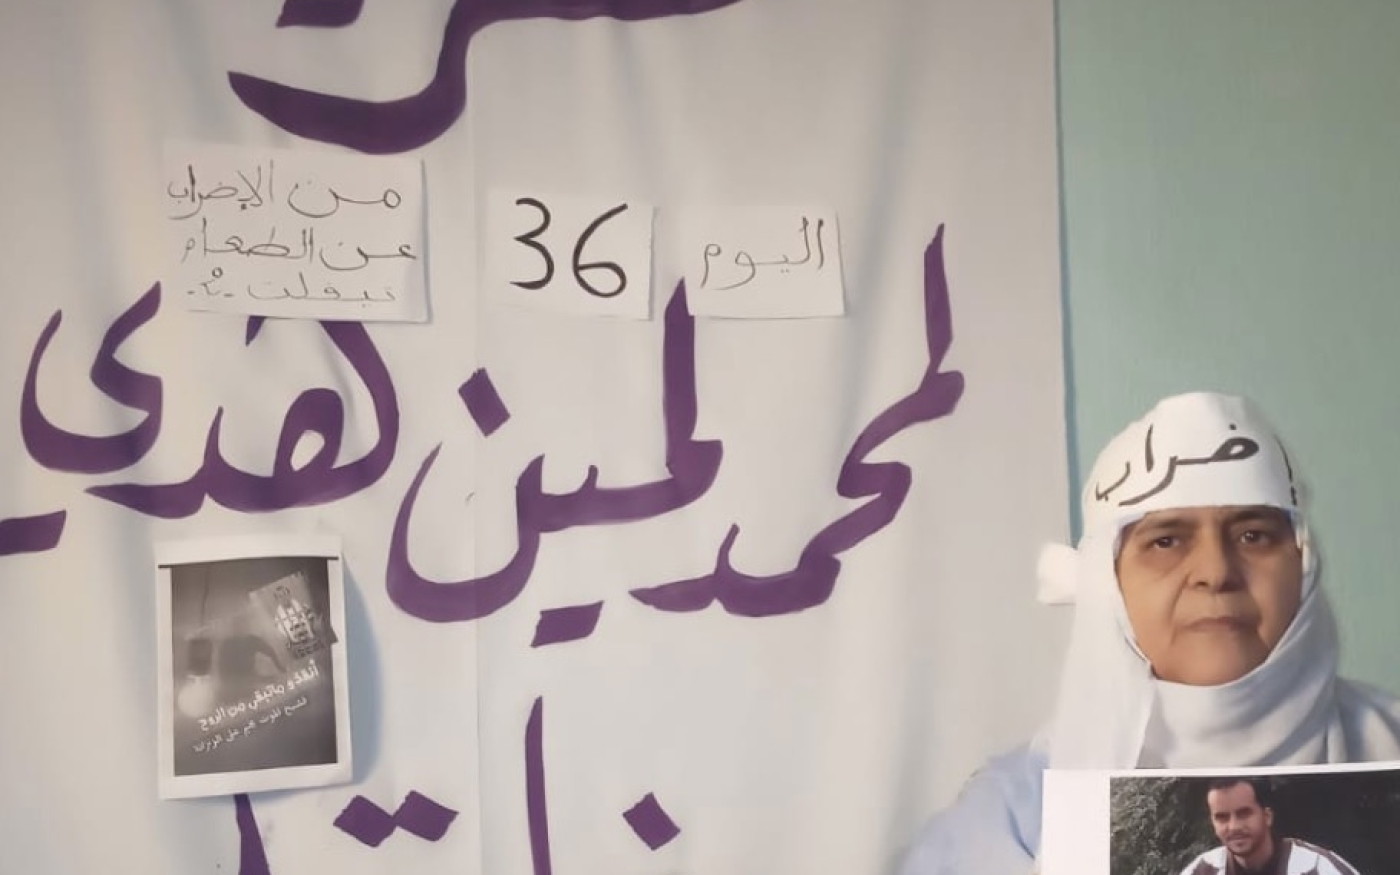 La mère de Mohamed Haddi devant un poster réclamant la libération de son fils (Document fourni/MEE)